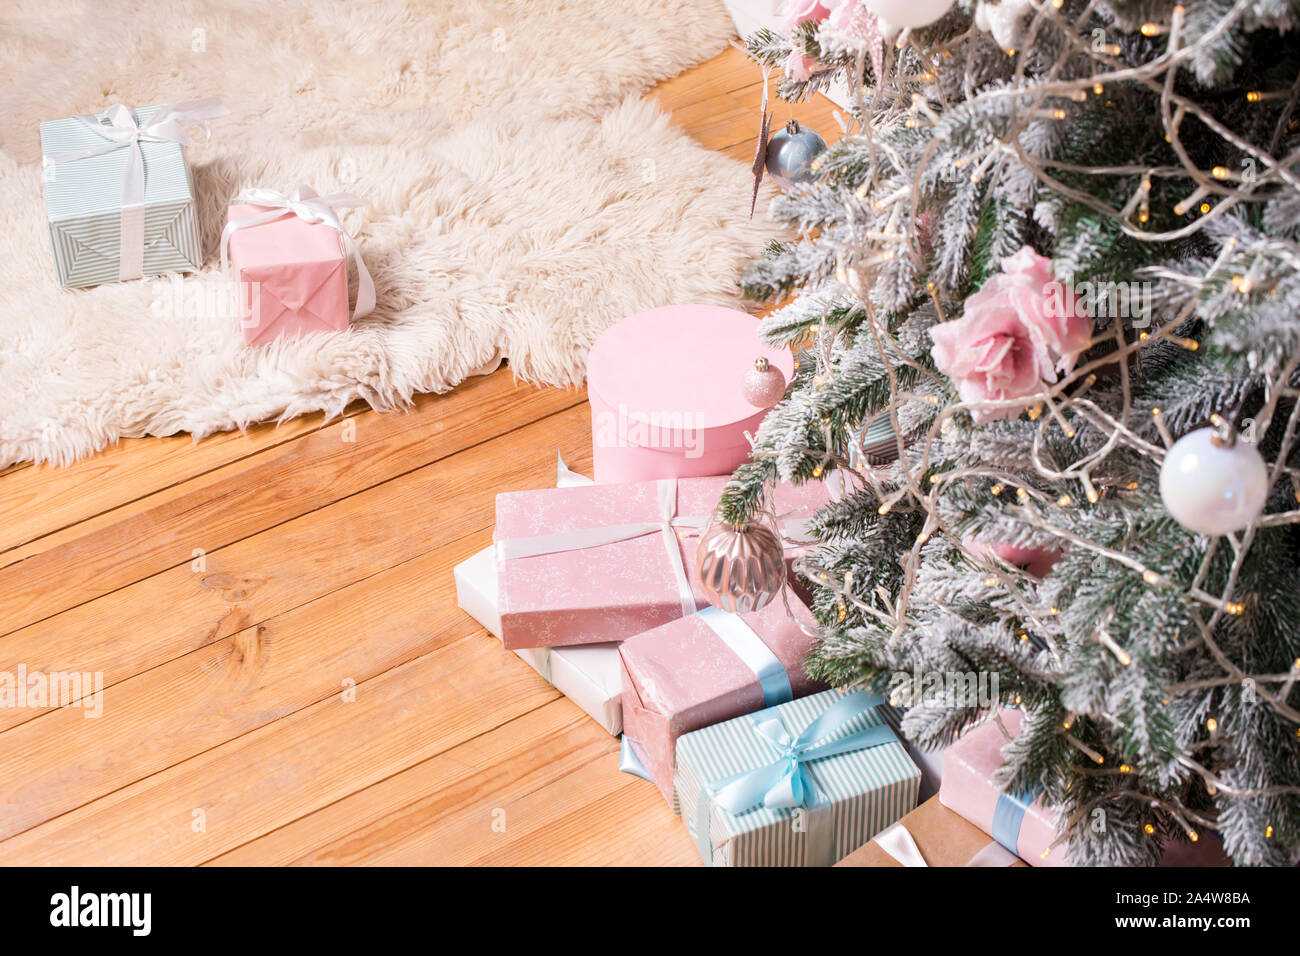 De beaux cadeaux de Noël sur le plancher près de sapin dans la salle. Des cadeaux de Noël et de décoration. Heureux Vacances d'hiver Banque D'Images